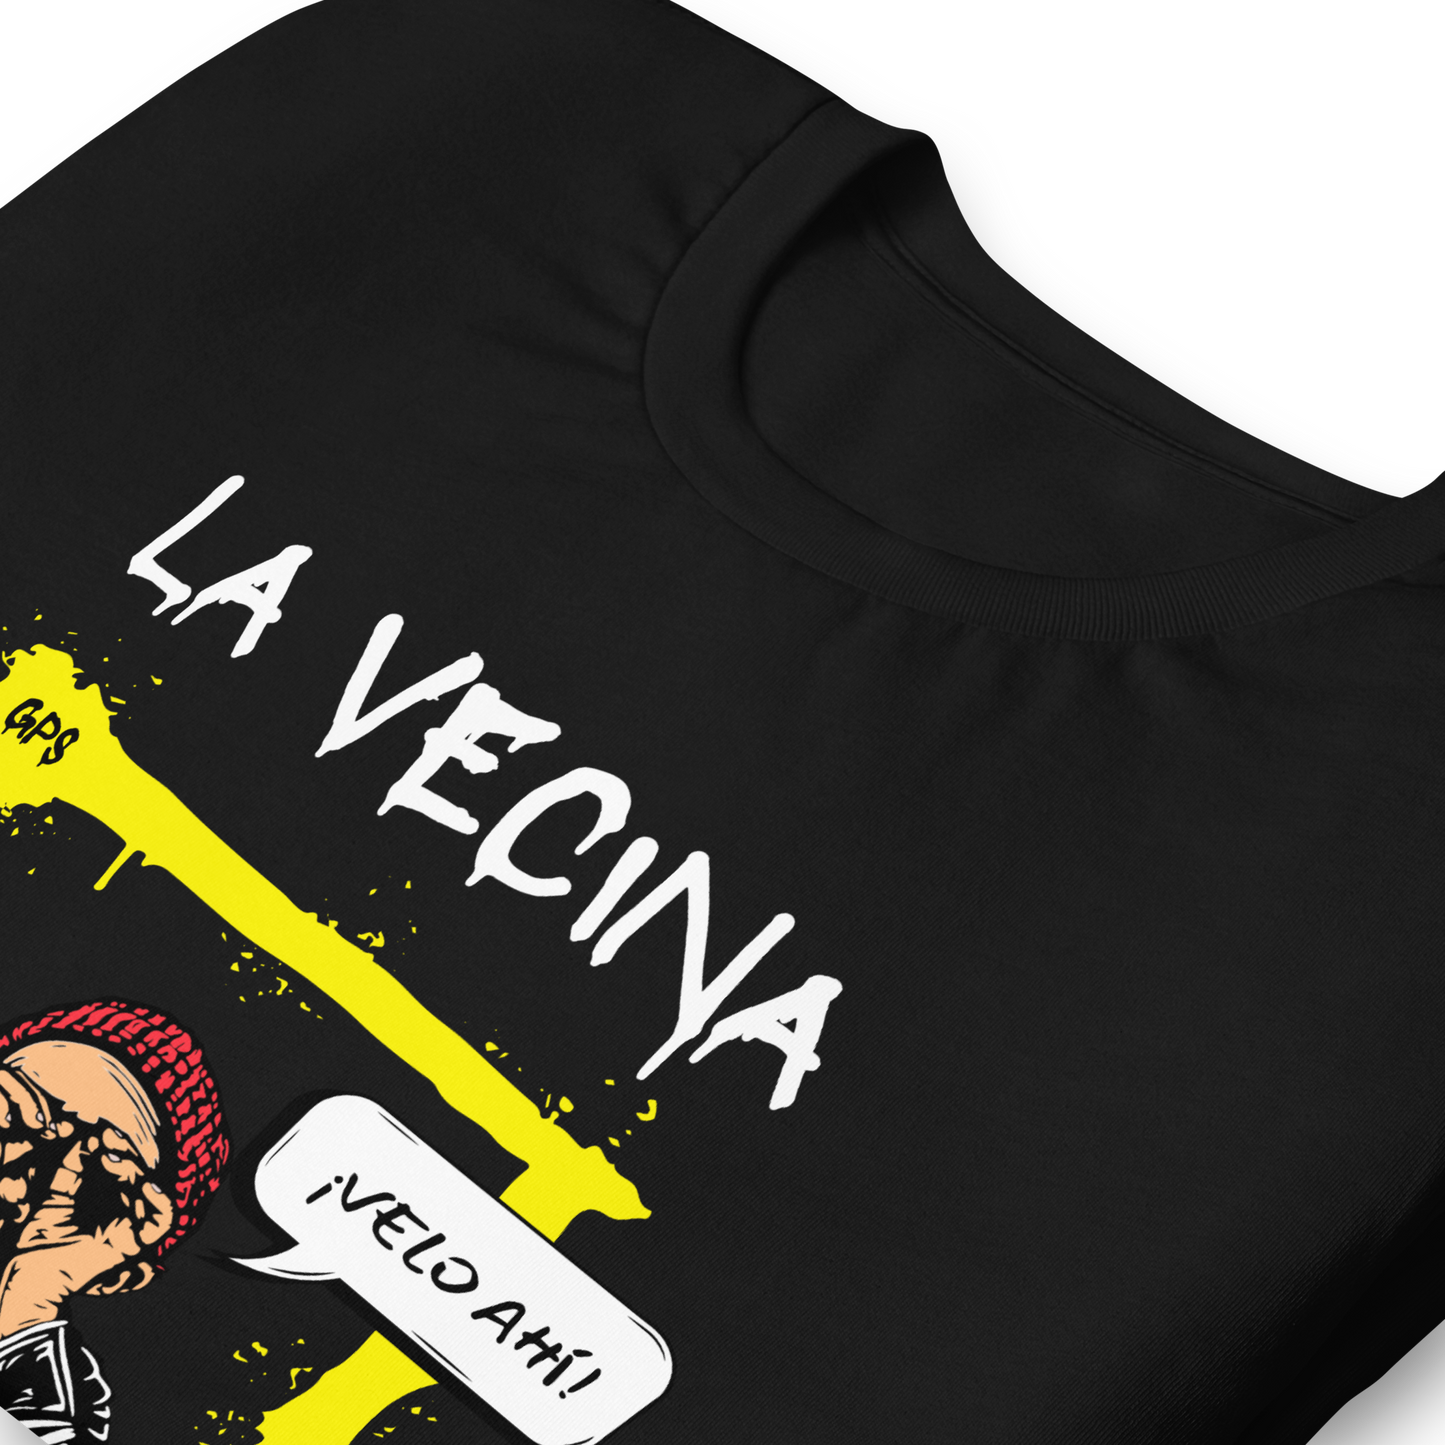 “LA VECINA” Unisex Premium T-Shirt